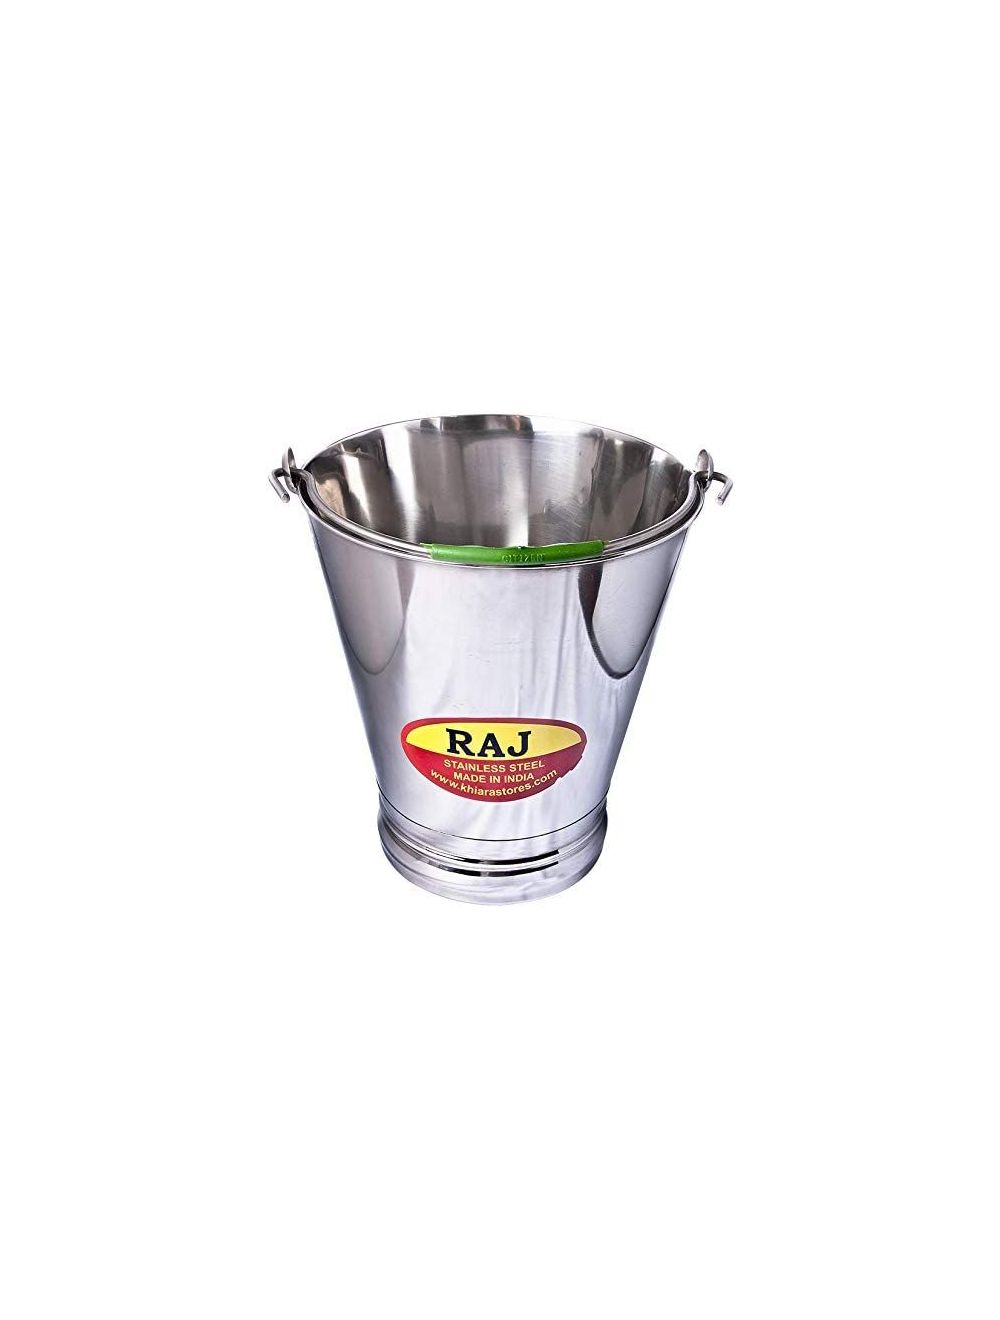 Raj Steel Bucket, Silver, 6 L, SB0002